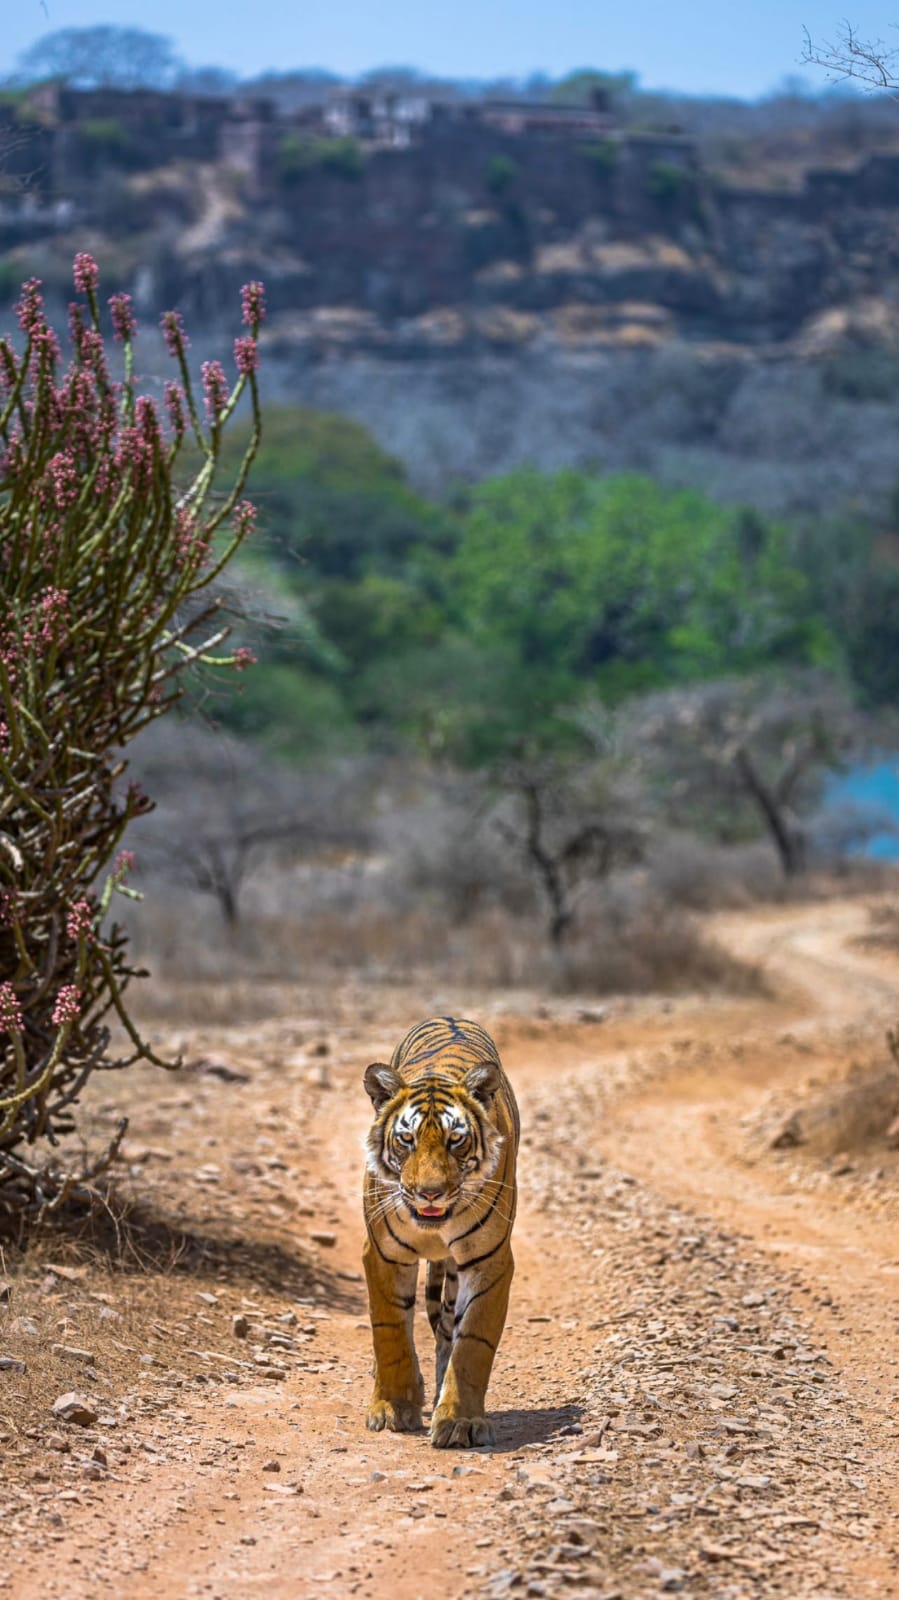 Tiger's walk - Unknown